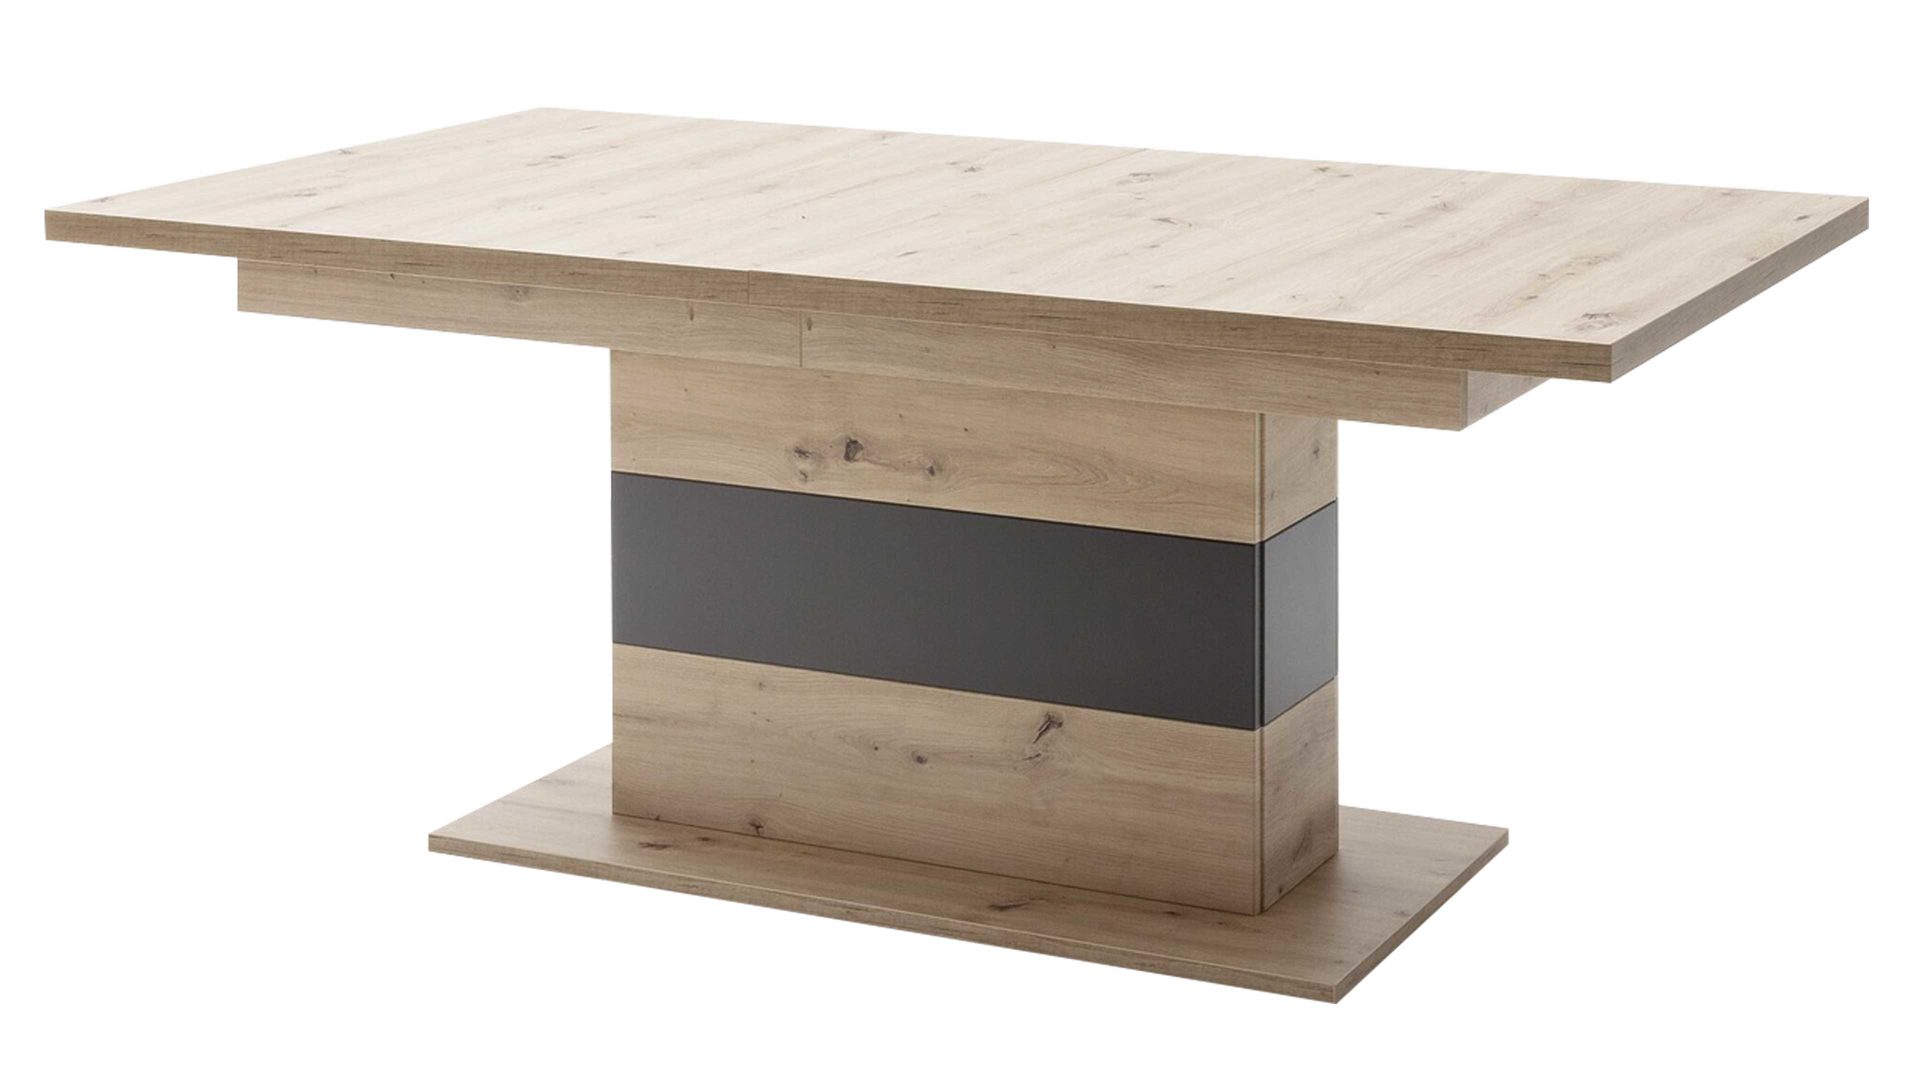 Auszugtisch Mca furniture aus Holz in Anthrazit Wohnprogramm Meran - Auszugtisch Meran Balkeneiche & Anthrazit - ca. 180-280 x 100 cm